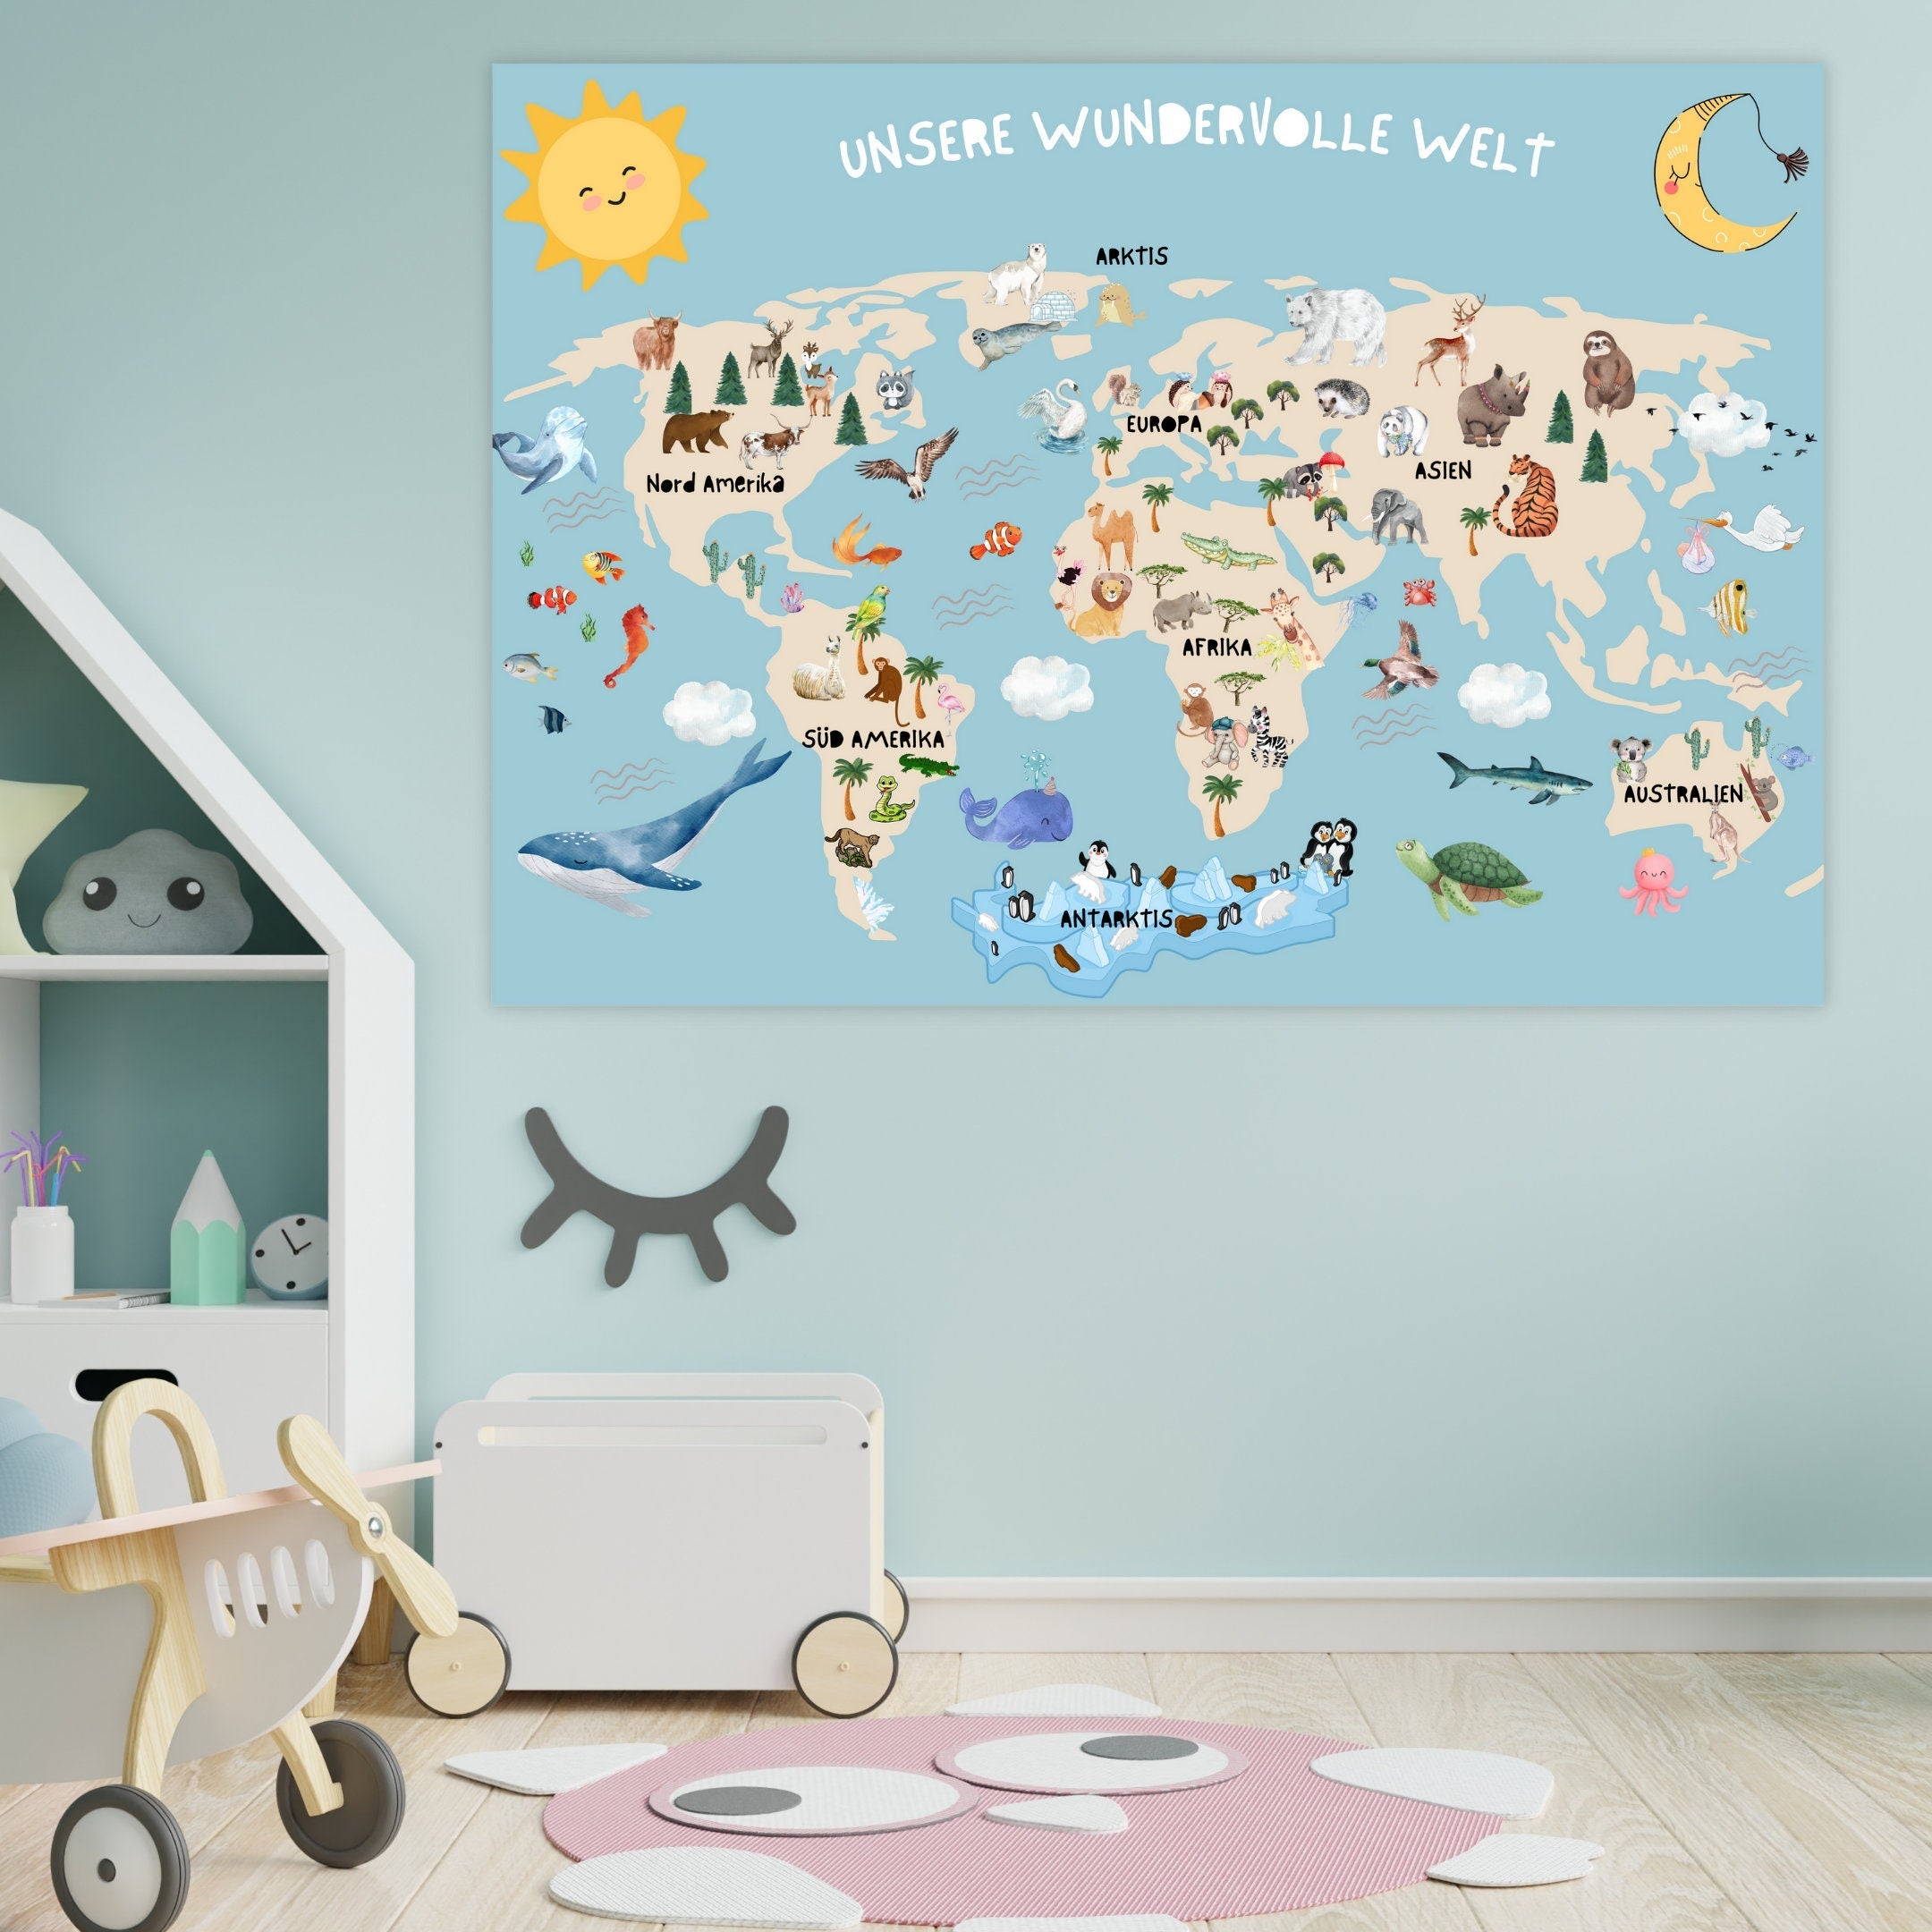 XL Weltkarte für Kinder | DIN A1 & DIN A2 | Unsere wundervolle Welt